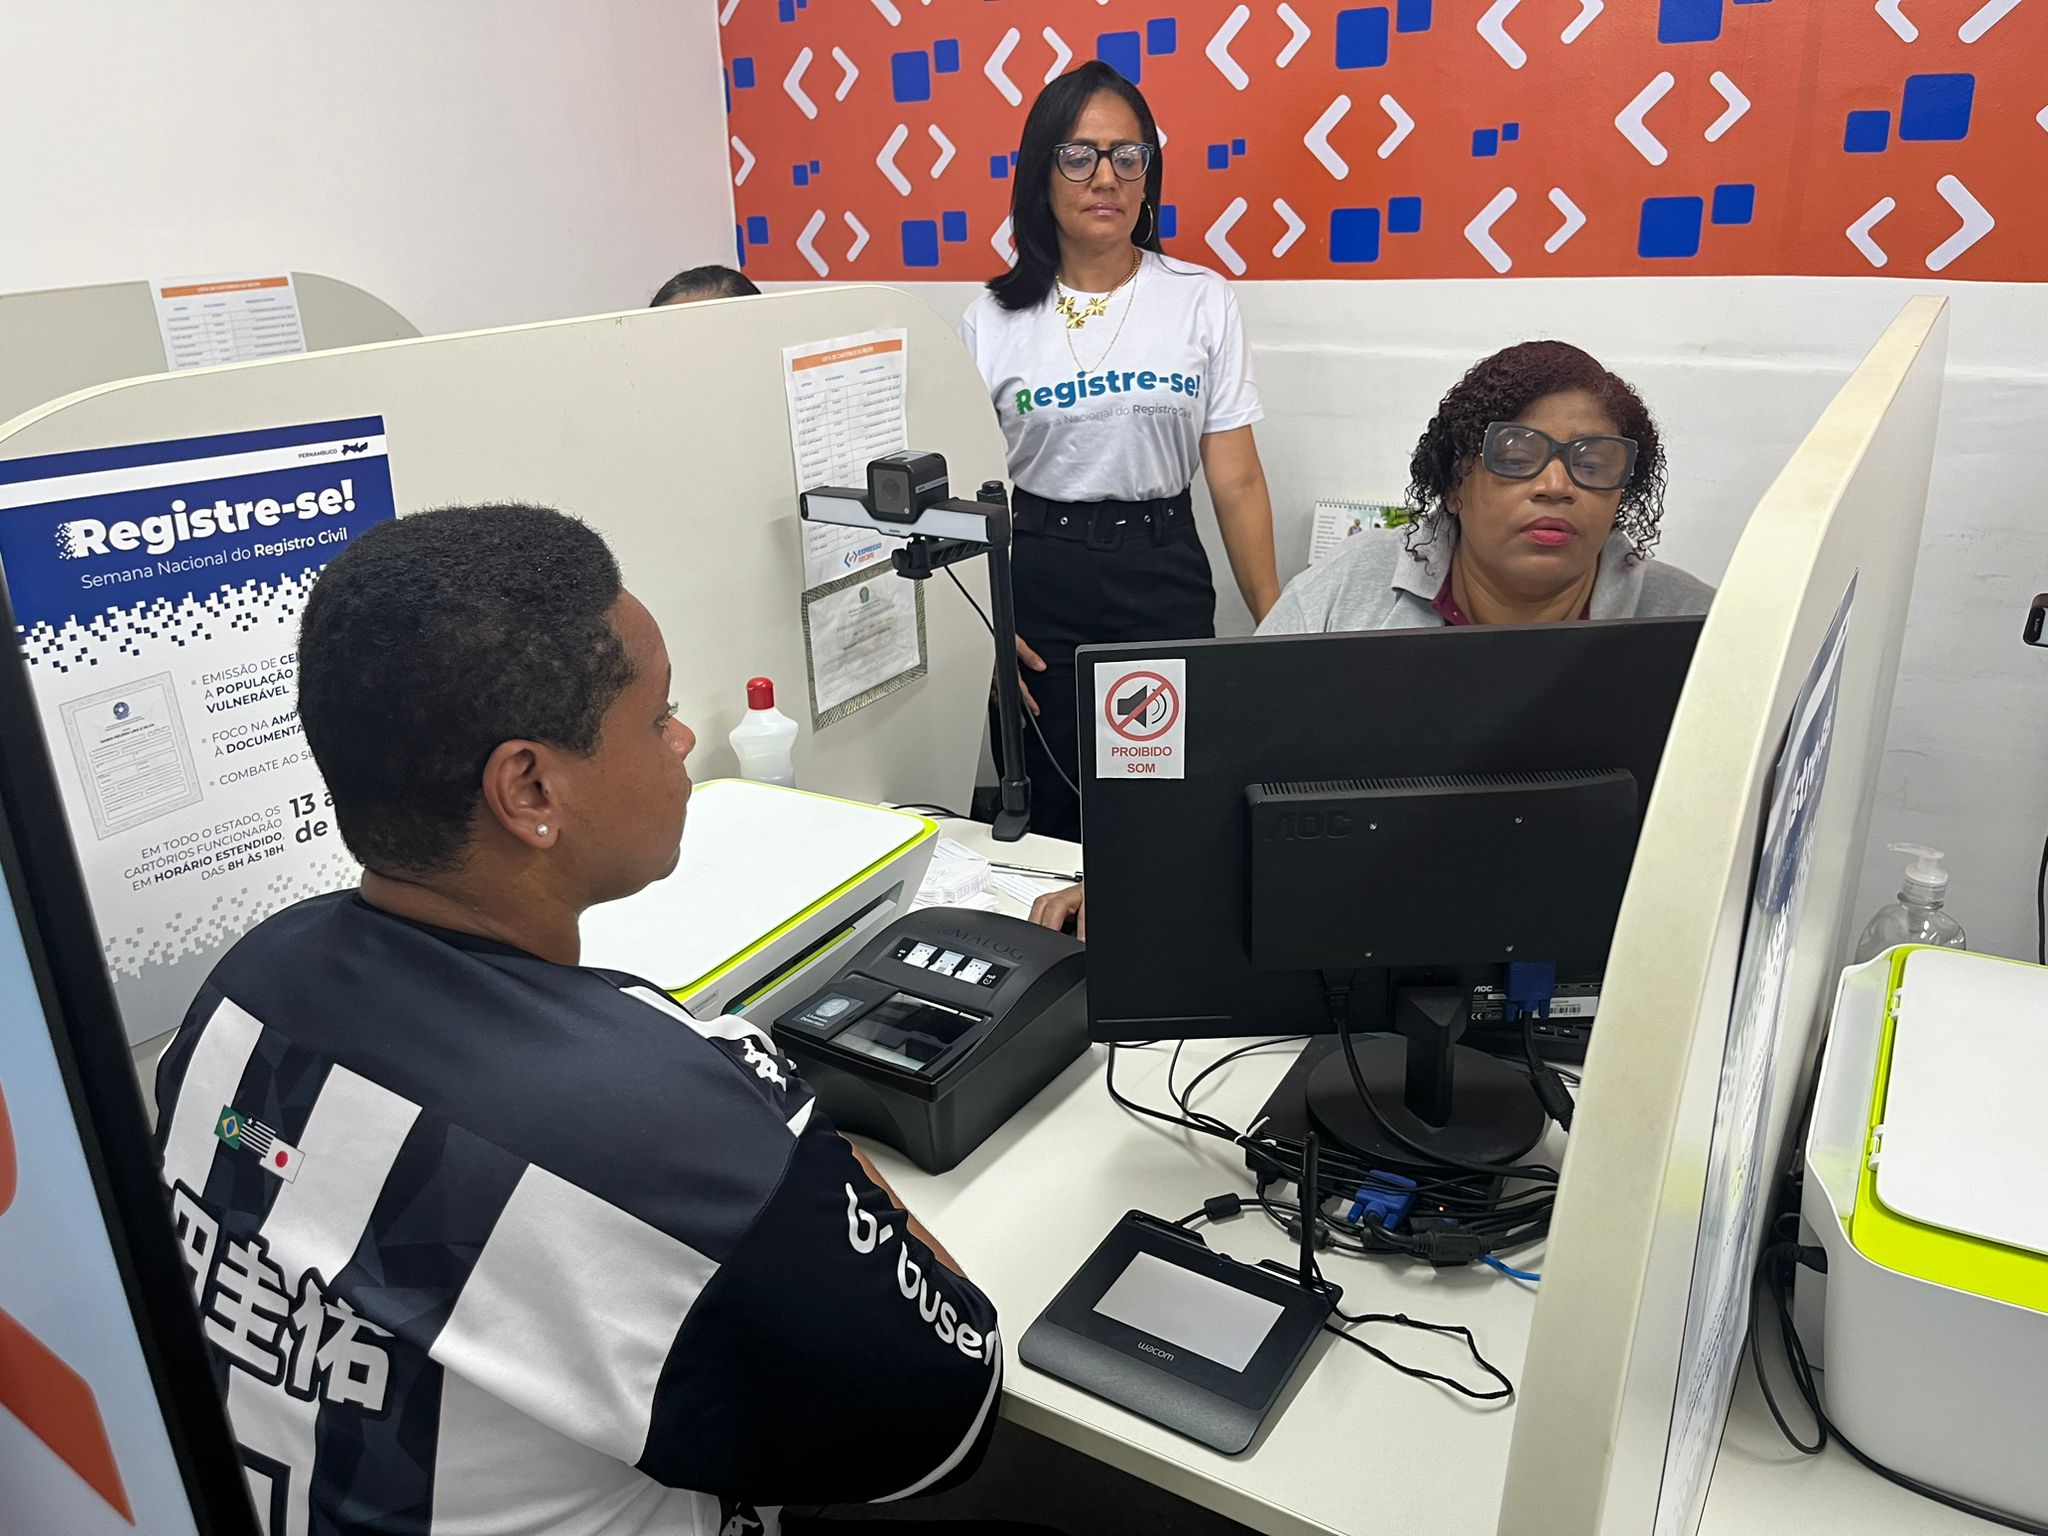 Foto da notícia - Com mais de 9 mil certidões solicitadas em apenas três dias, Semana Nacional do Registro Civil em Pernambuco segue até esta sexta